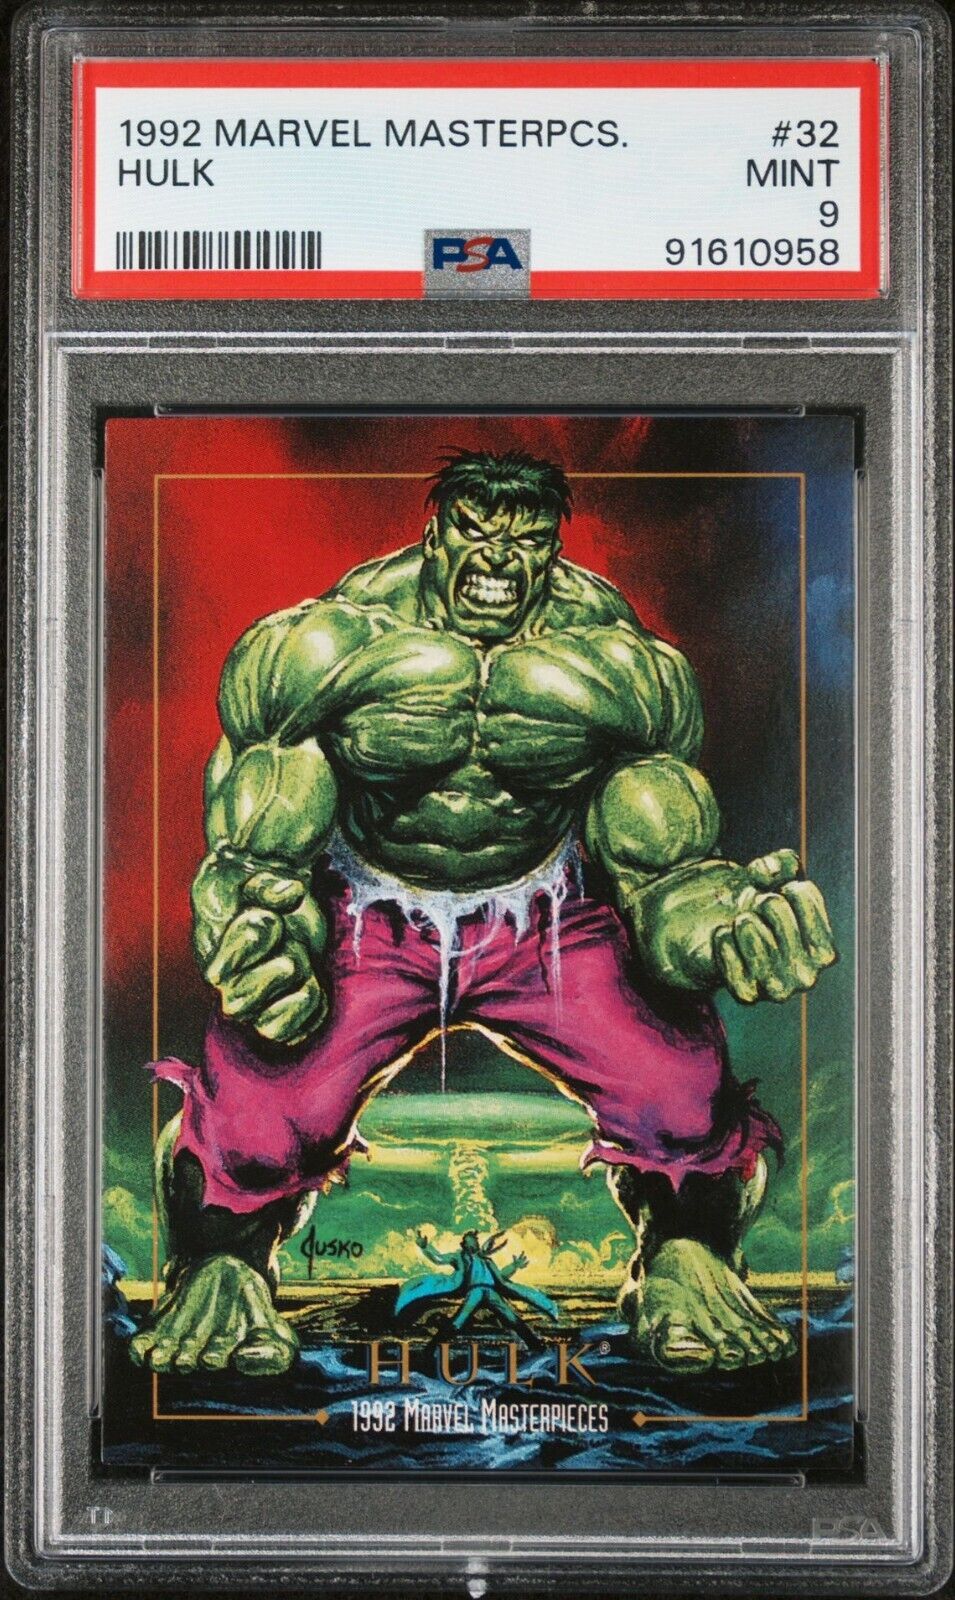 Hulk 1992 Marvel Masterpieces #32 Jusko MCU PSA 9 MINT